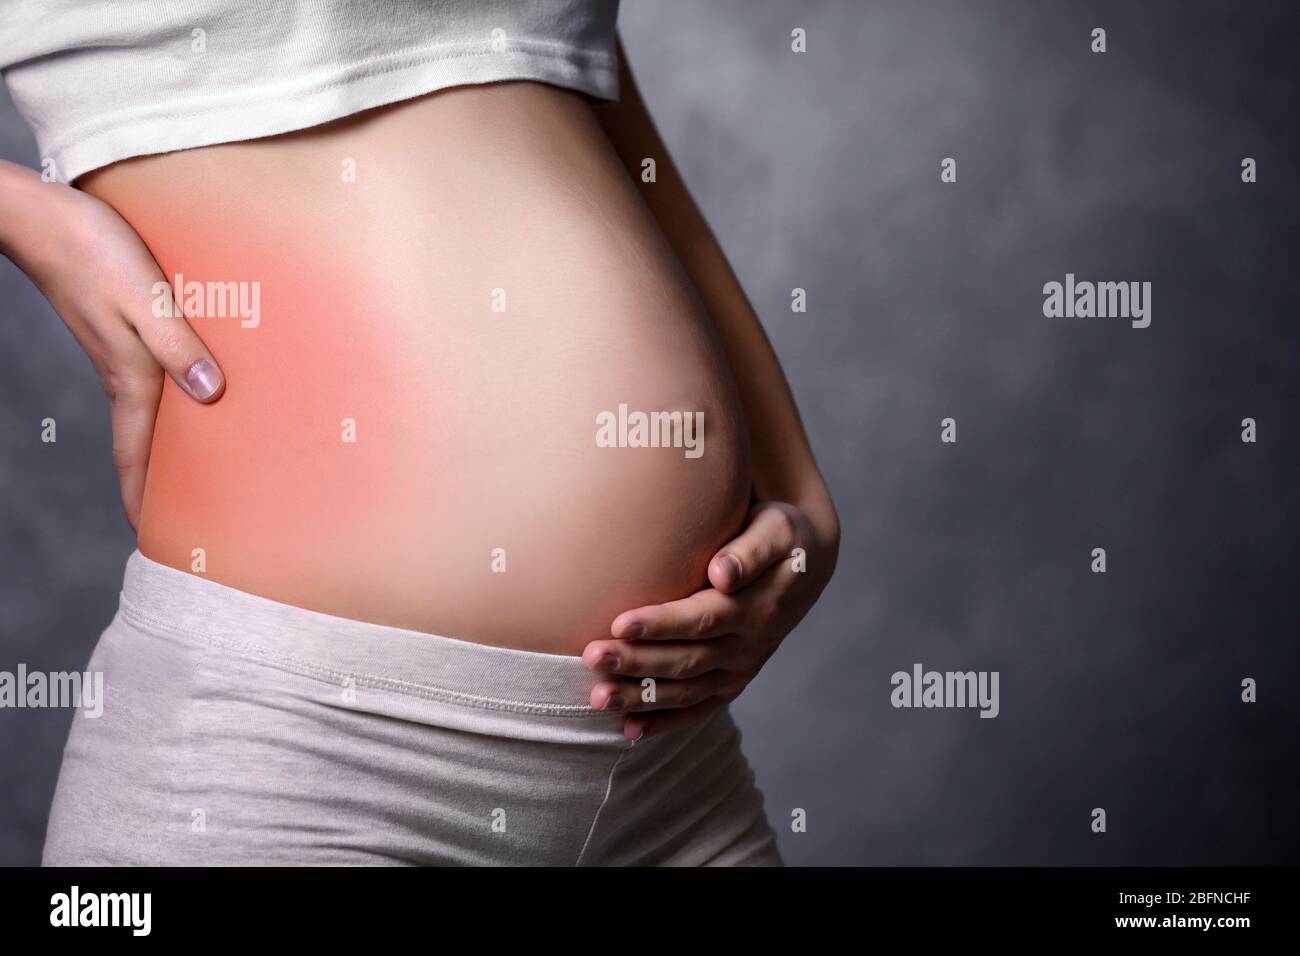 39 неделя беременности ощущение. Живот. Беременный живот. Беременный живот на боку. Низ живота у беременной.